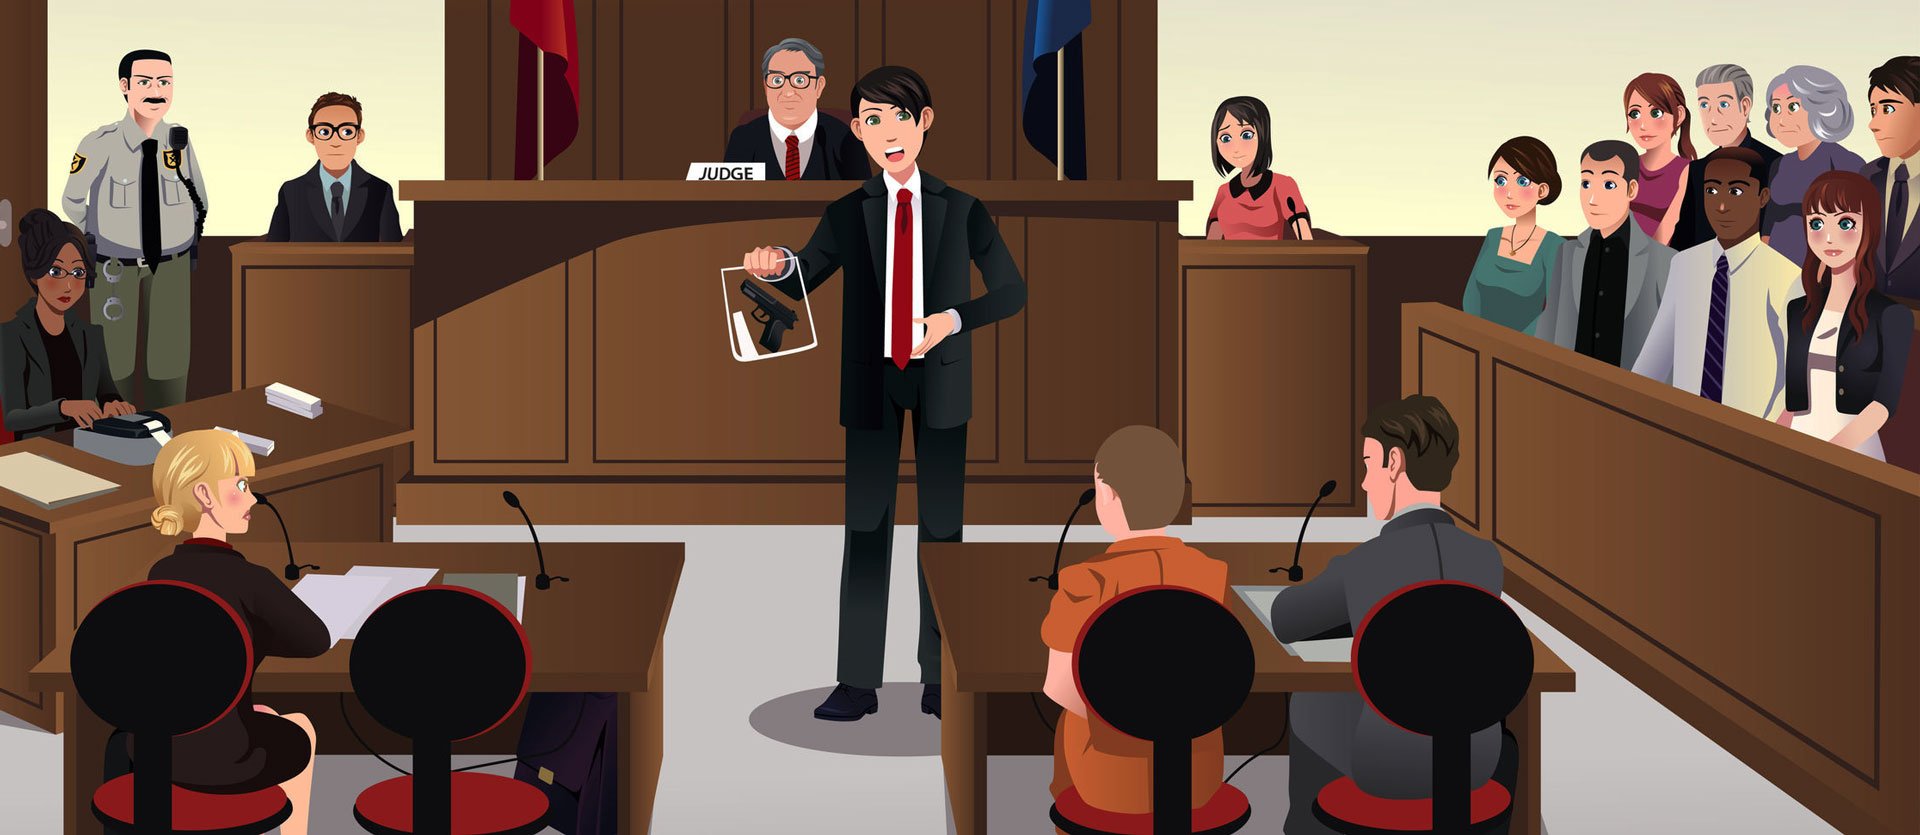 Адвокат защищает подсудимого. Суд заседание. Судебный процесс. Суд процесс. Судебное заседание в уголовном процессе.